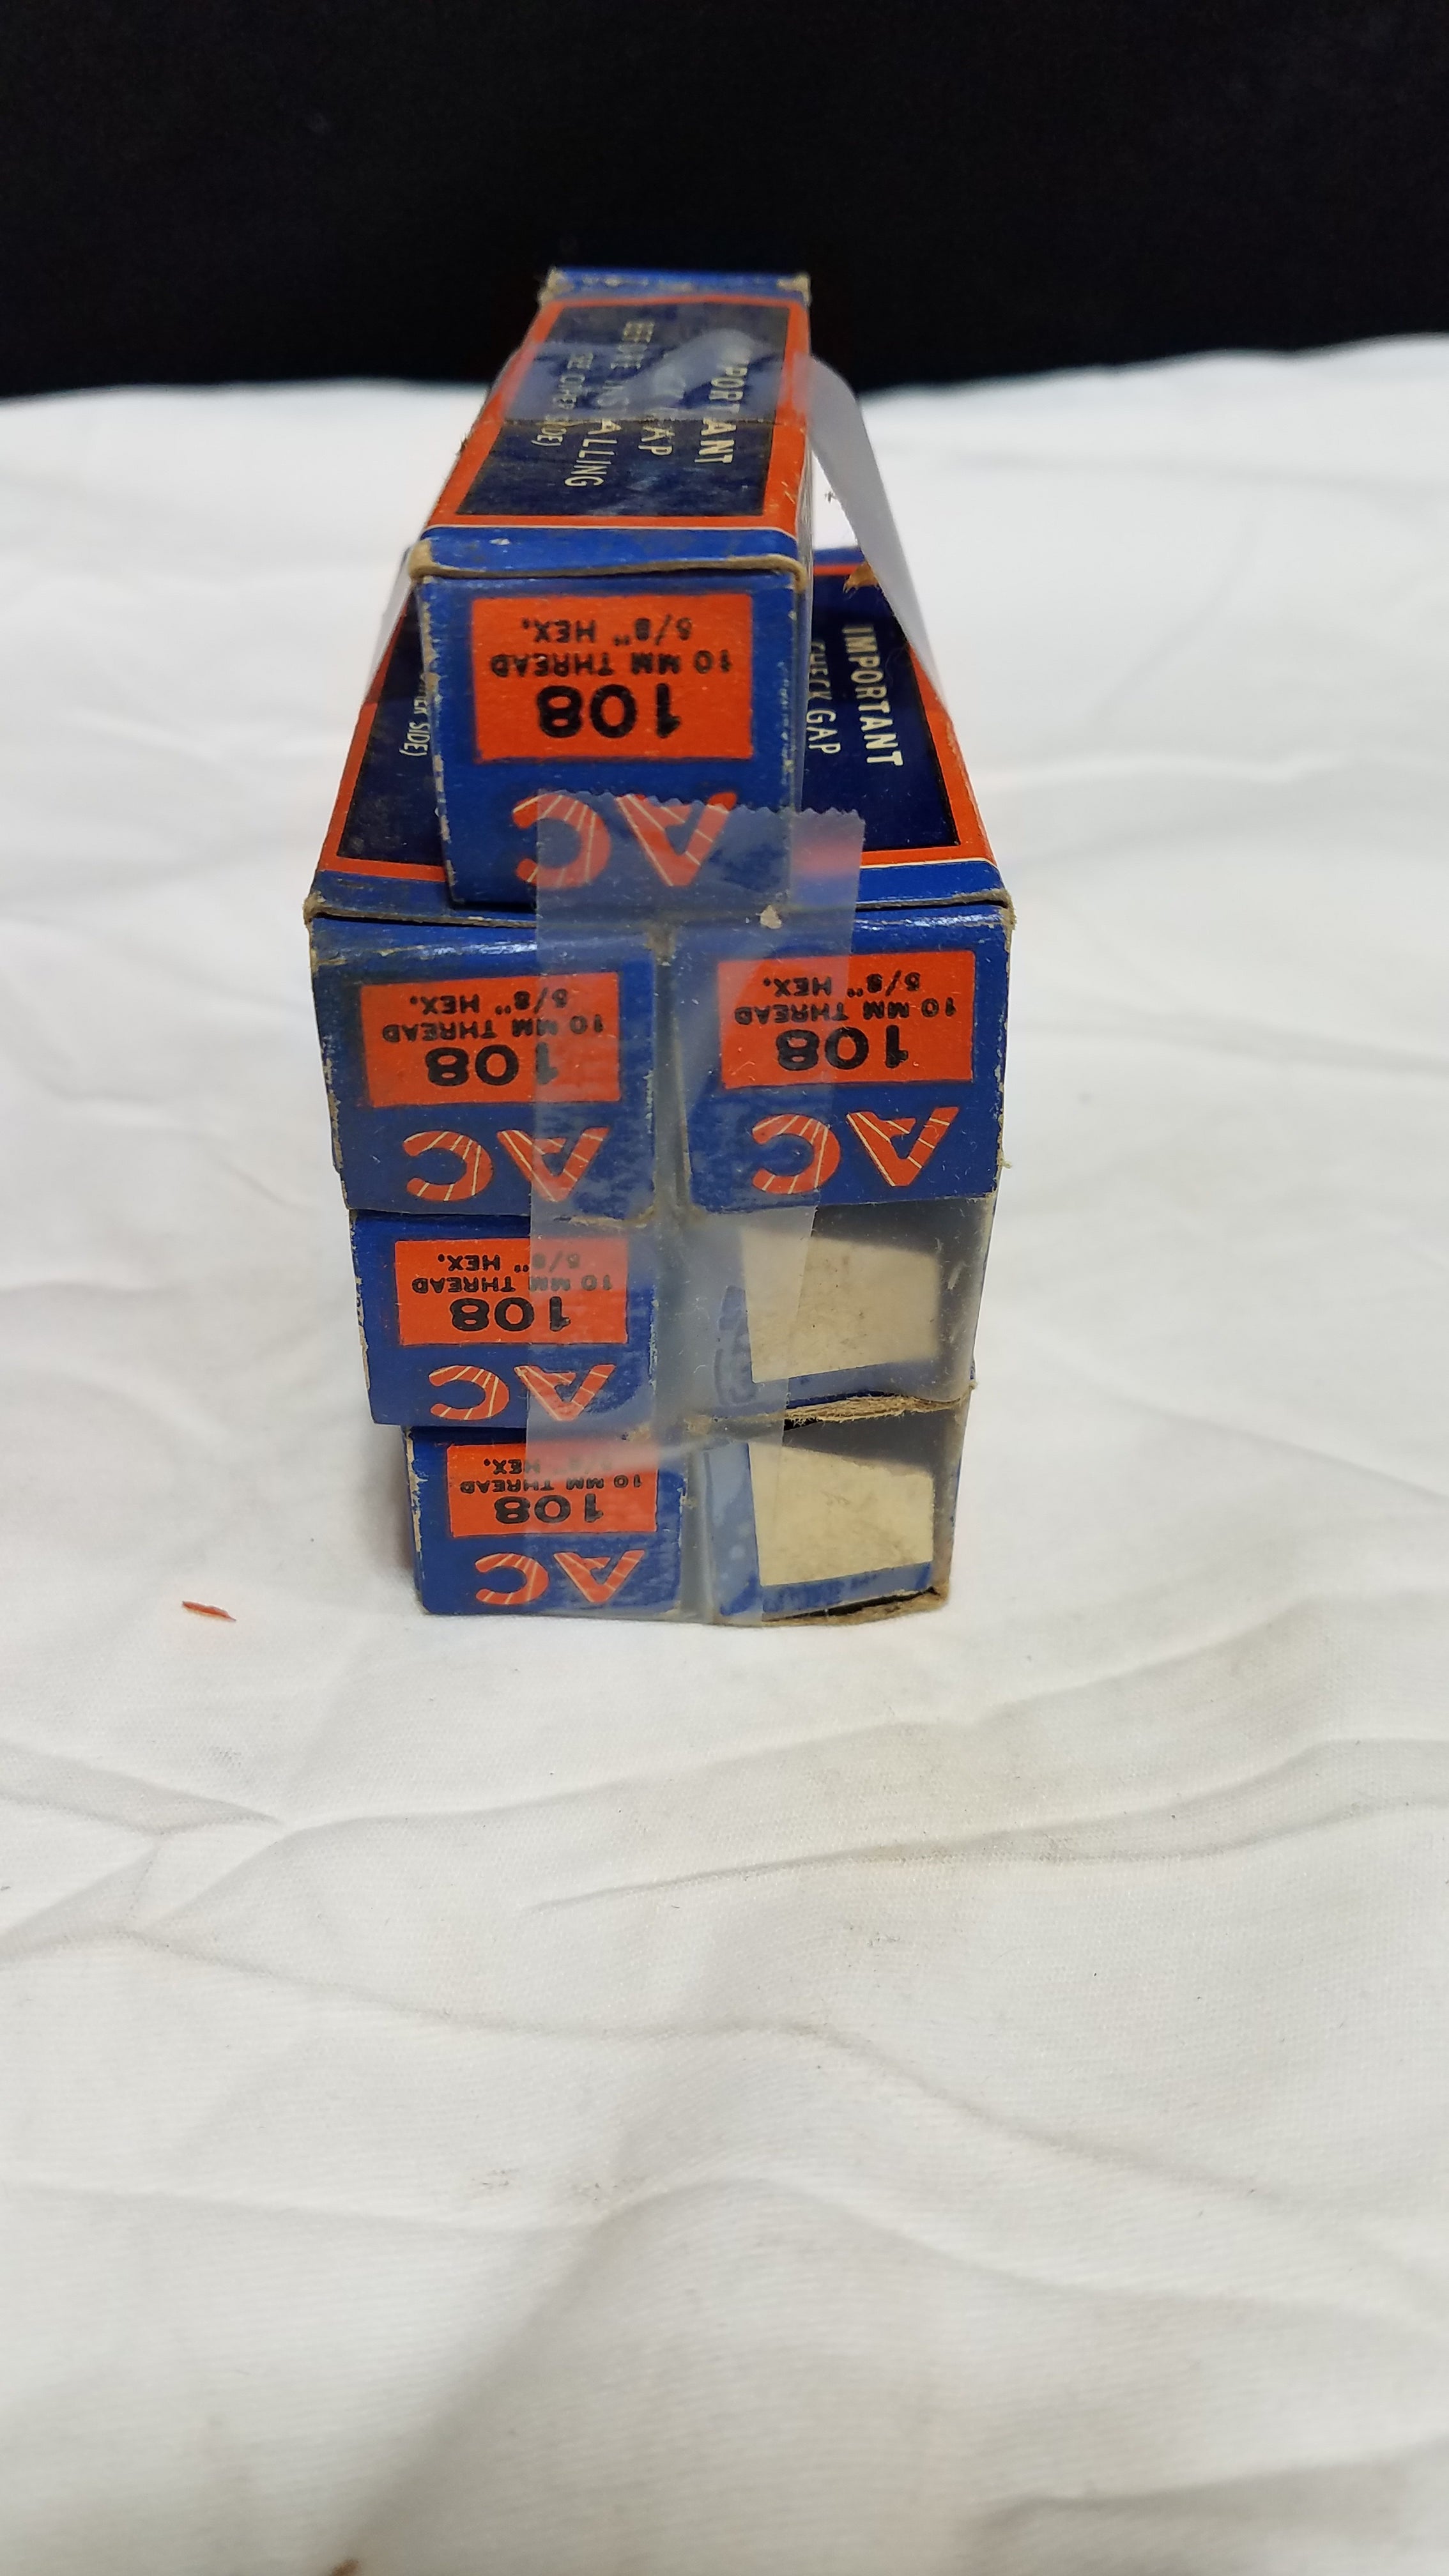 Rare Vintage 7 AC 108 Spark Plugs in Original Boxes